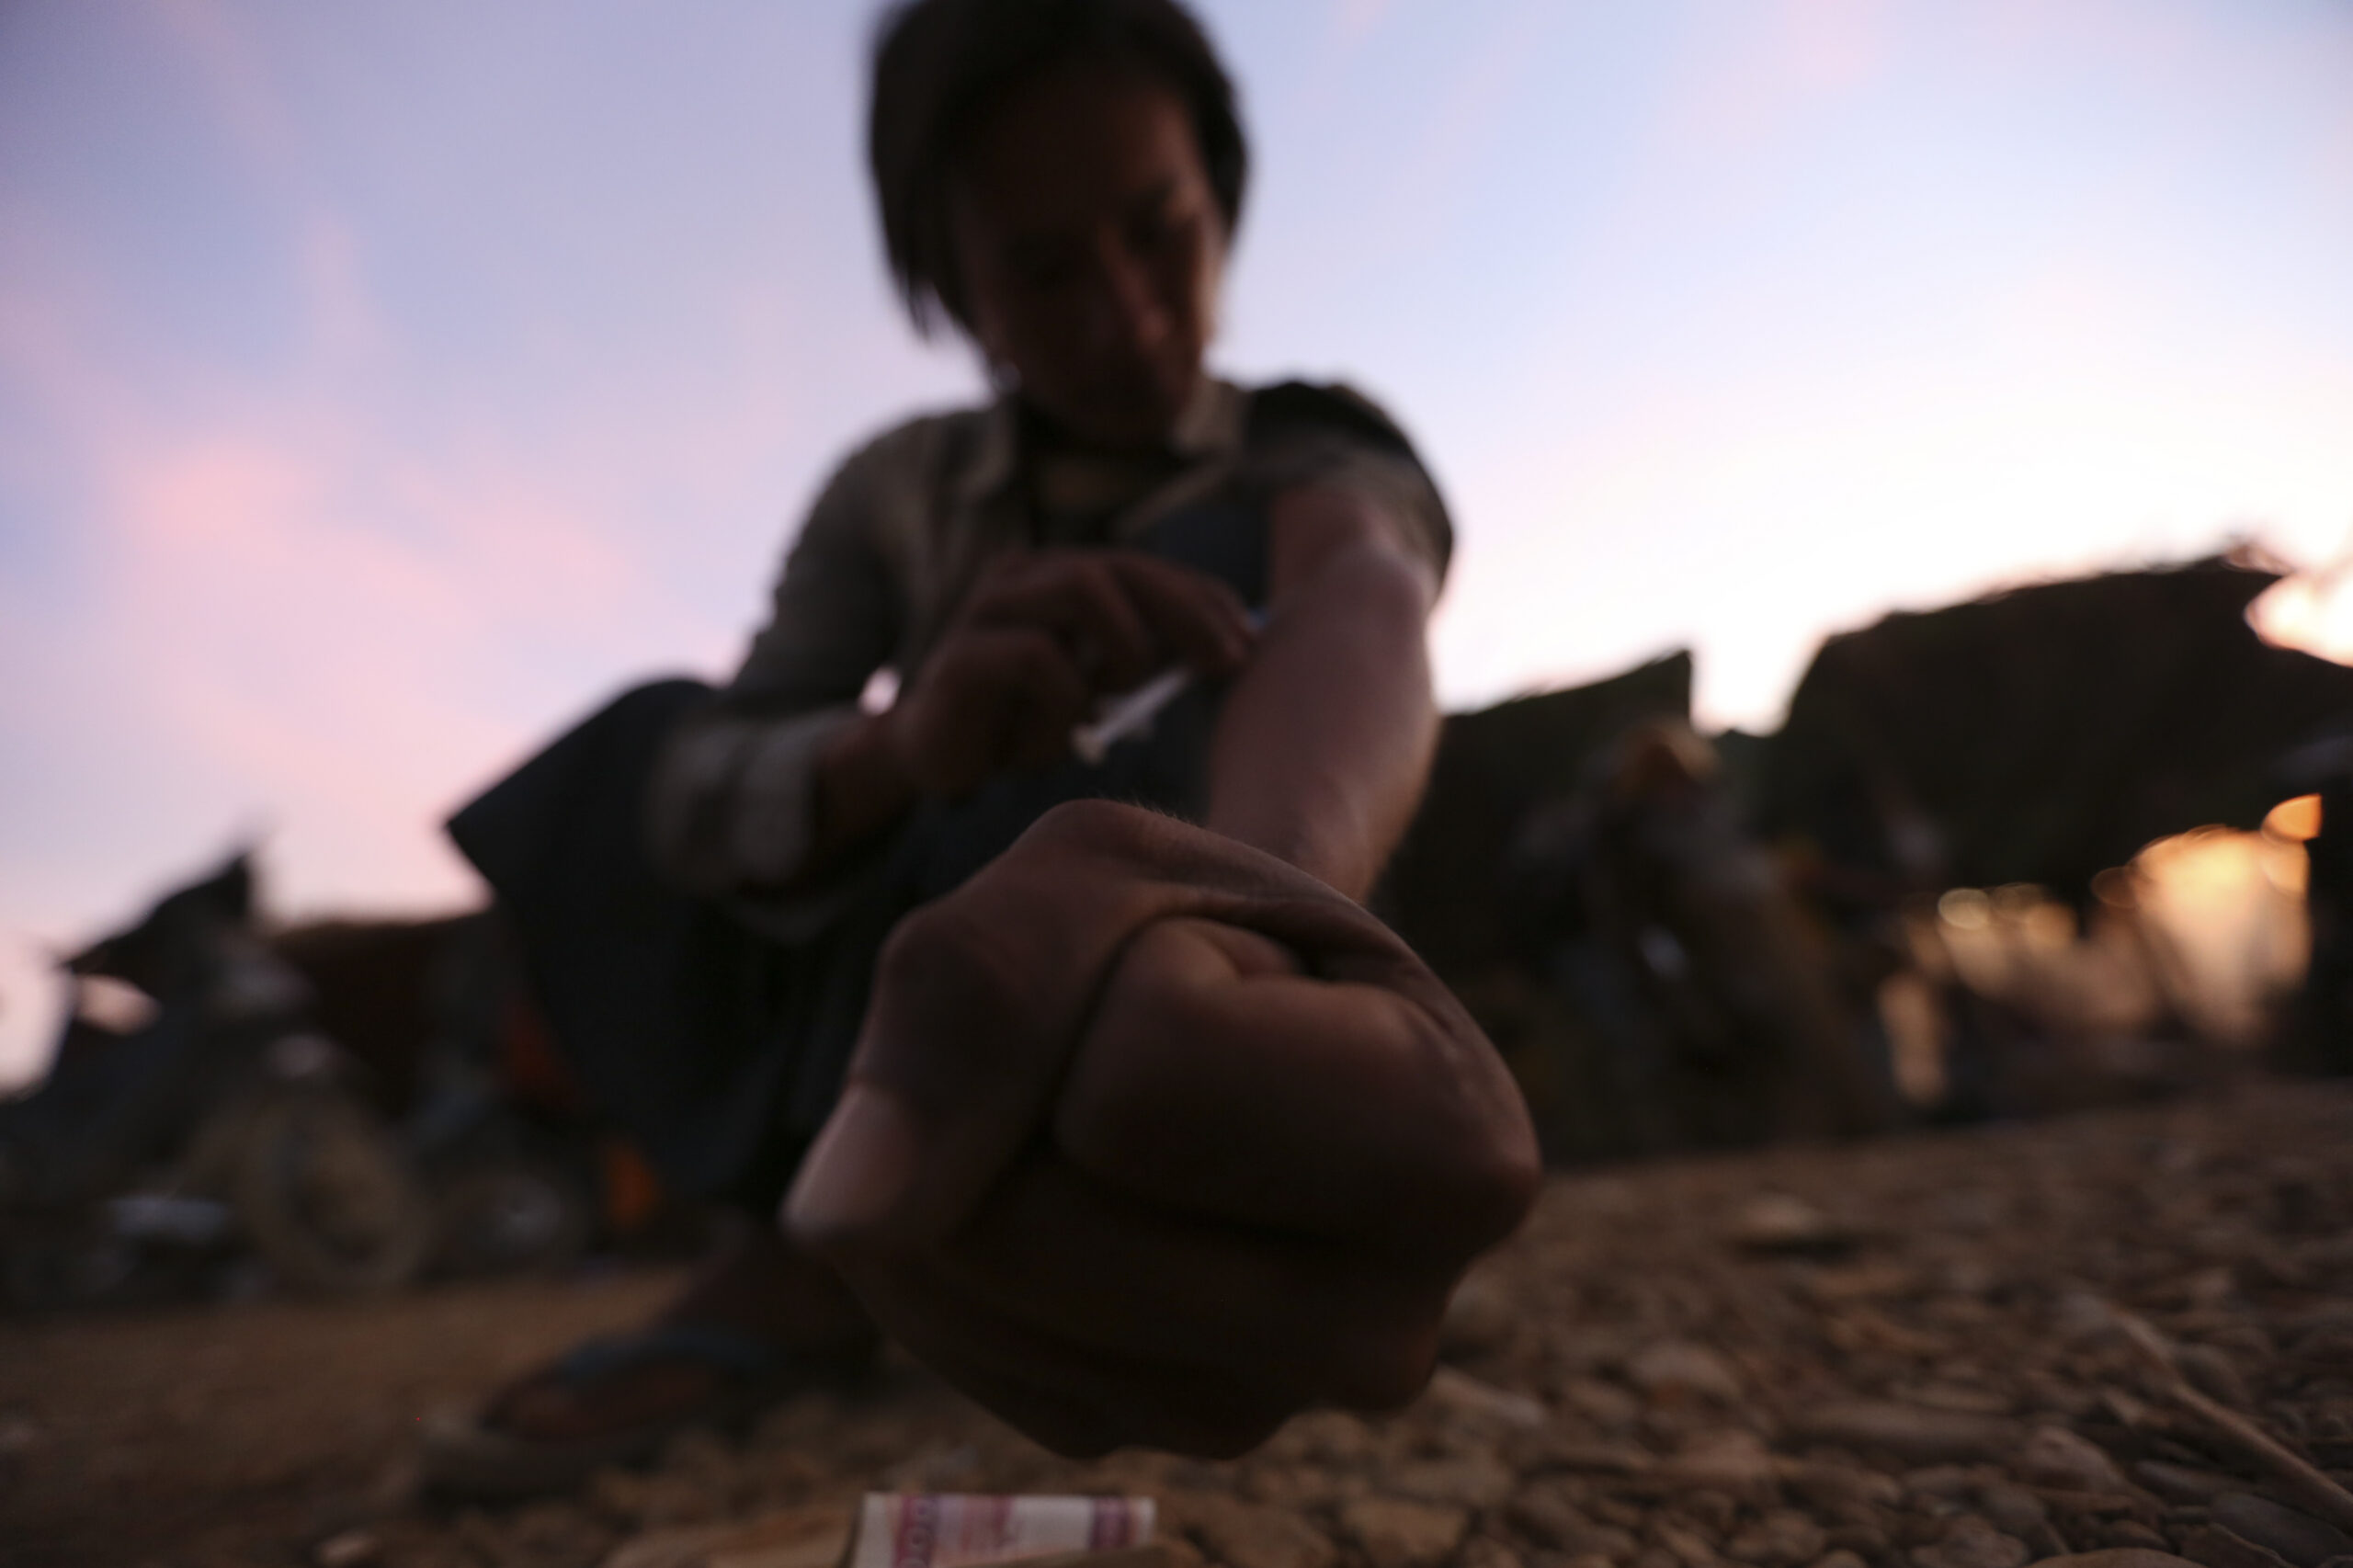 Myanmar: heroin addiction